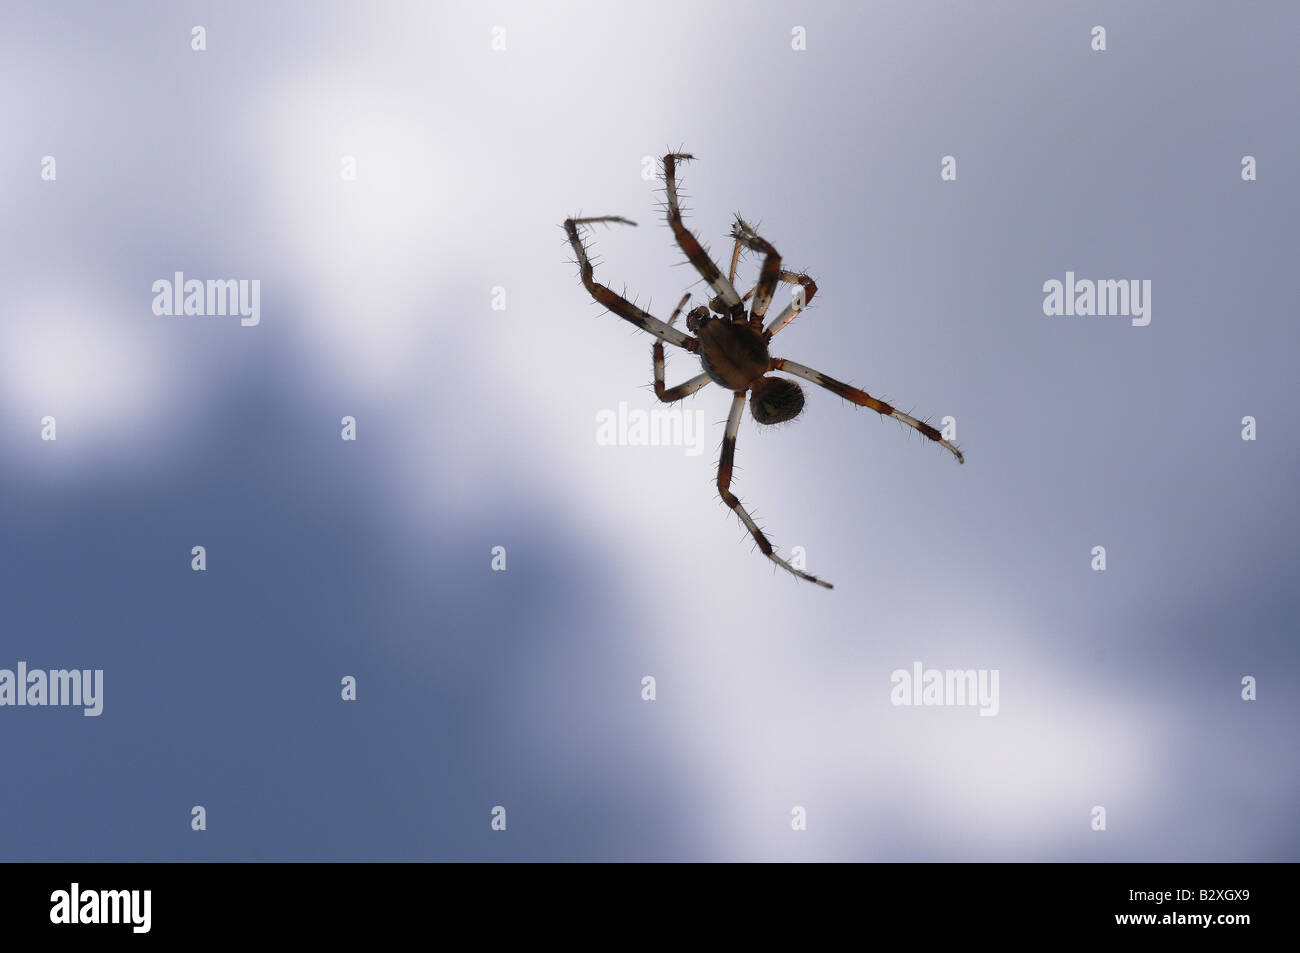 Eine Spinne, Arachnid, schweben im Raum, wie es aus einem feinen Strang Seide hängt, die gegen den blauen Himmel praktisch unsichtbar ist. Stockfoto